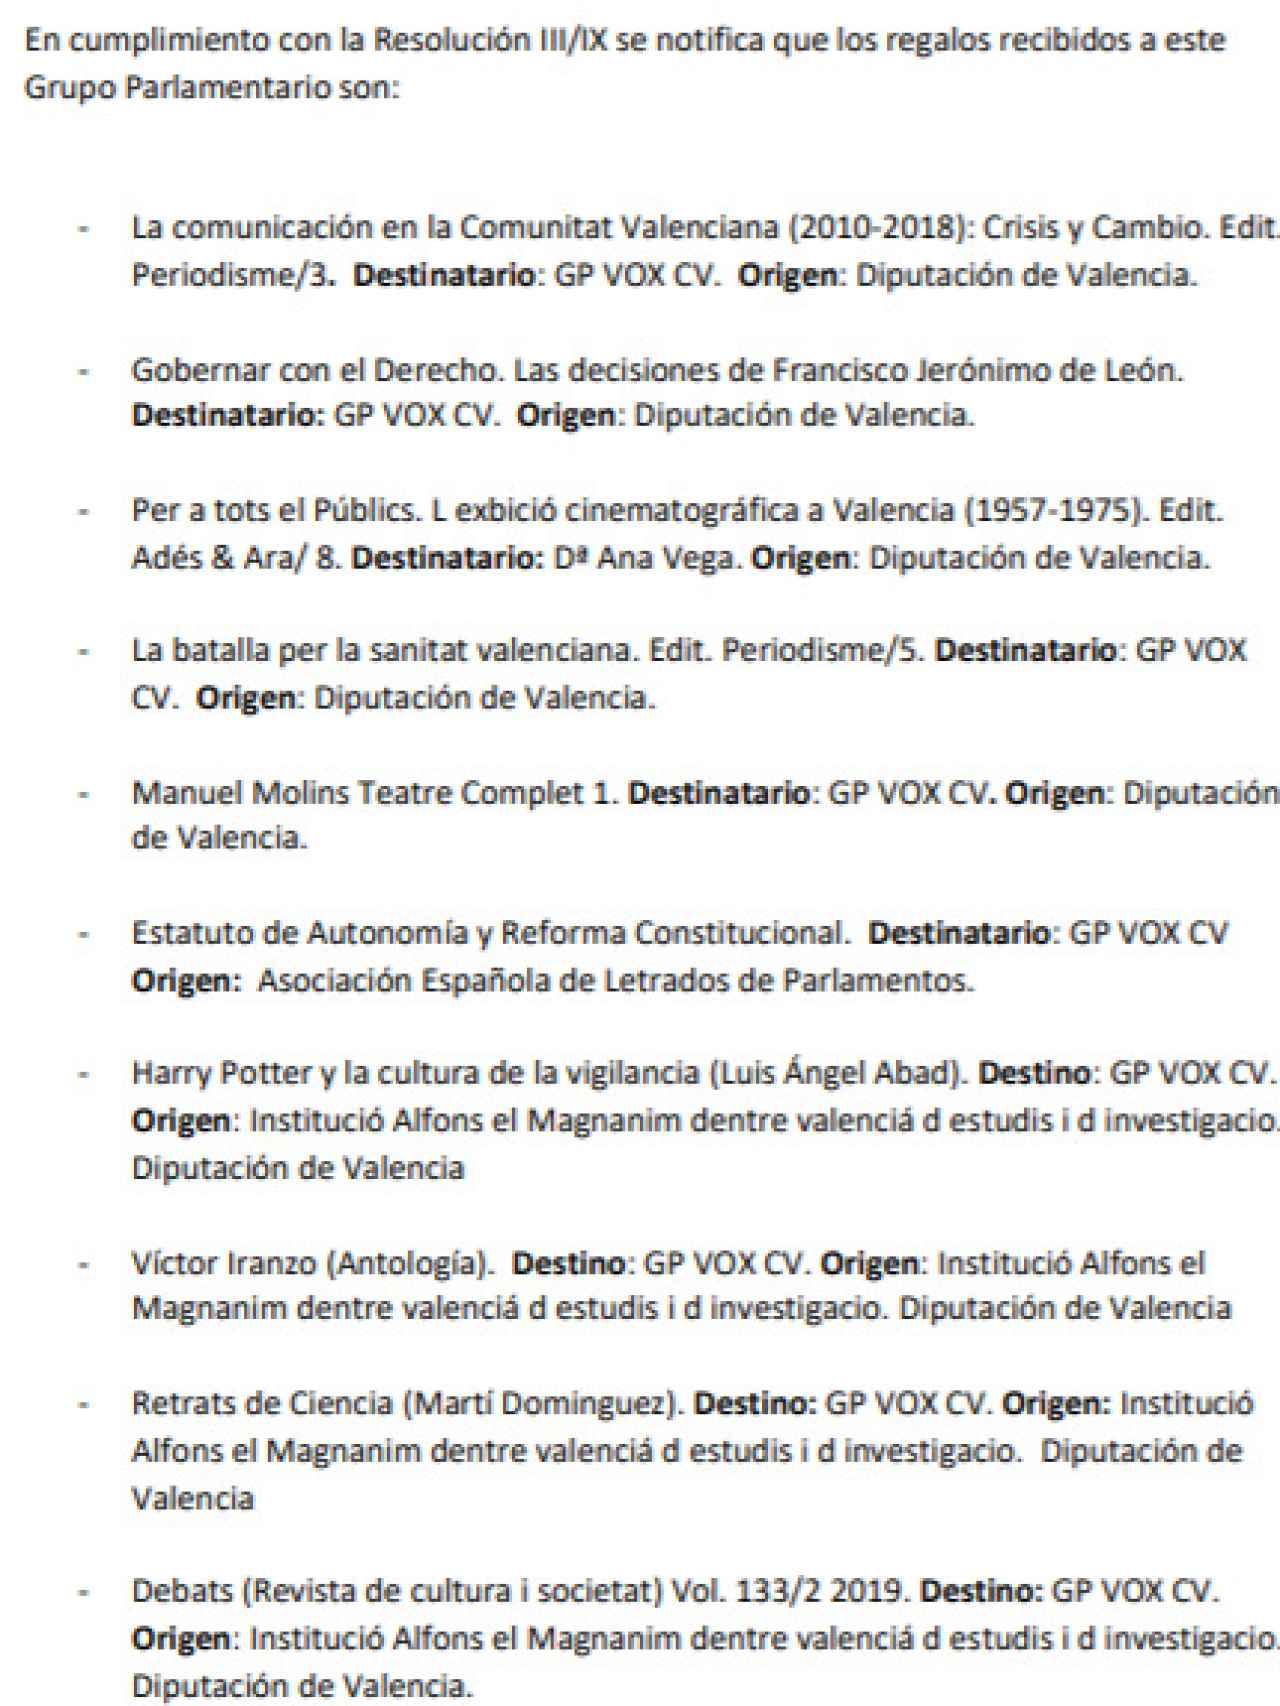 Listado de regalos presentados por VOX en las Cortes Valencianas.